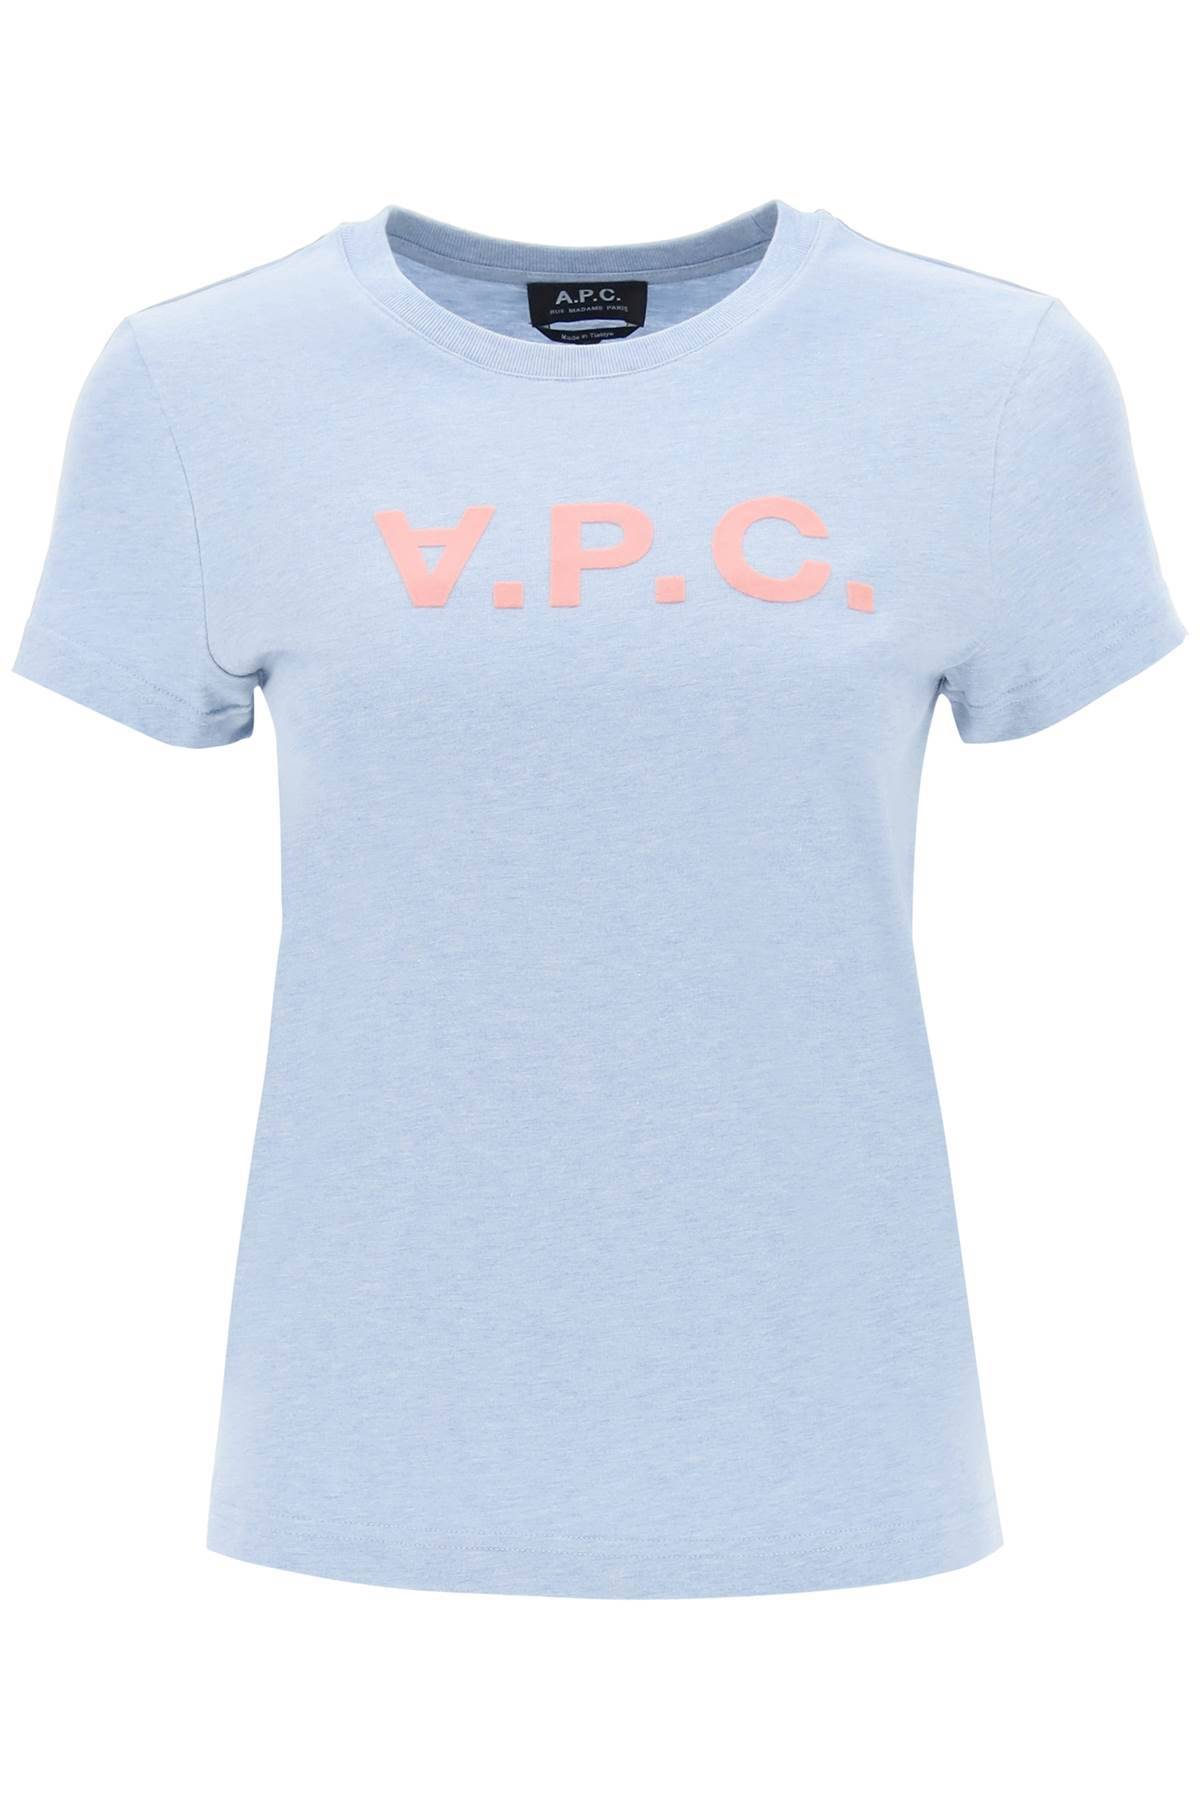 A.P.C. A. P.C. v. p.c. logo t-shirt